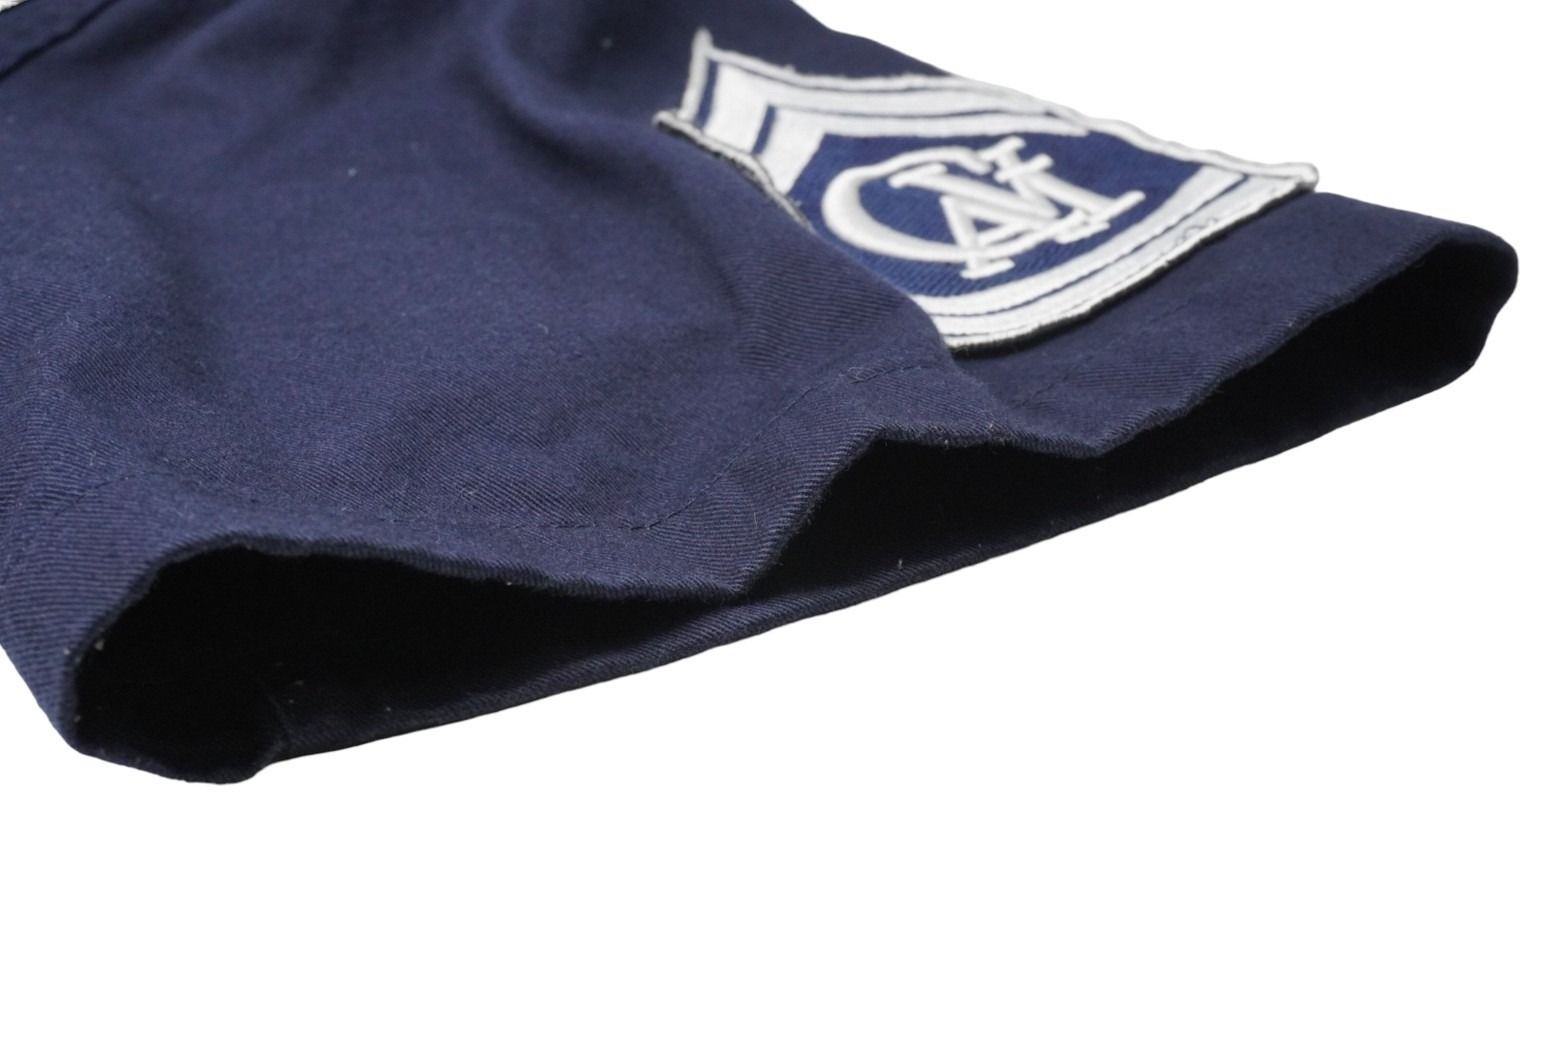 CAVI SWAGGER 半袖ミリタリーシャツ トップス スワッガー INDIA製 コットン ポリエステル ネイビー サイズL 良品 中古 53260